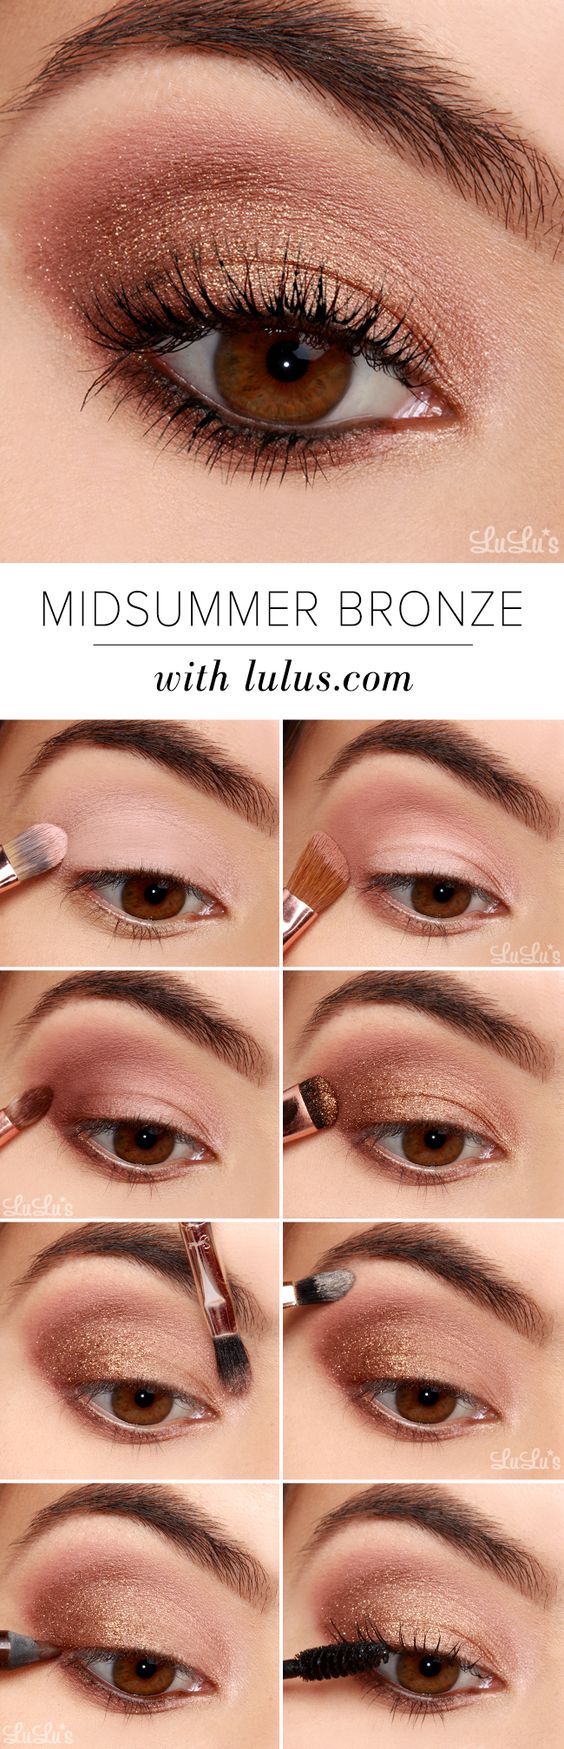 bronze-eye-makeup via